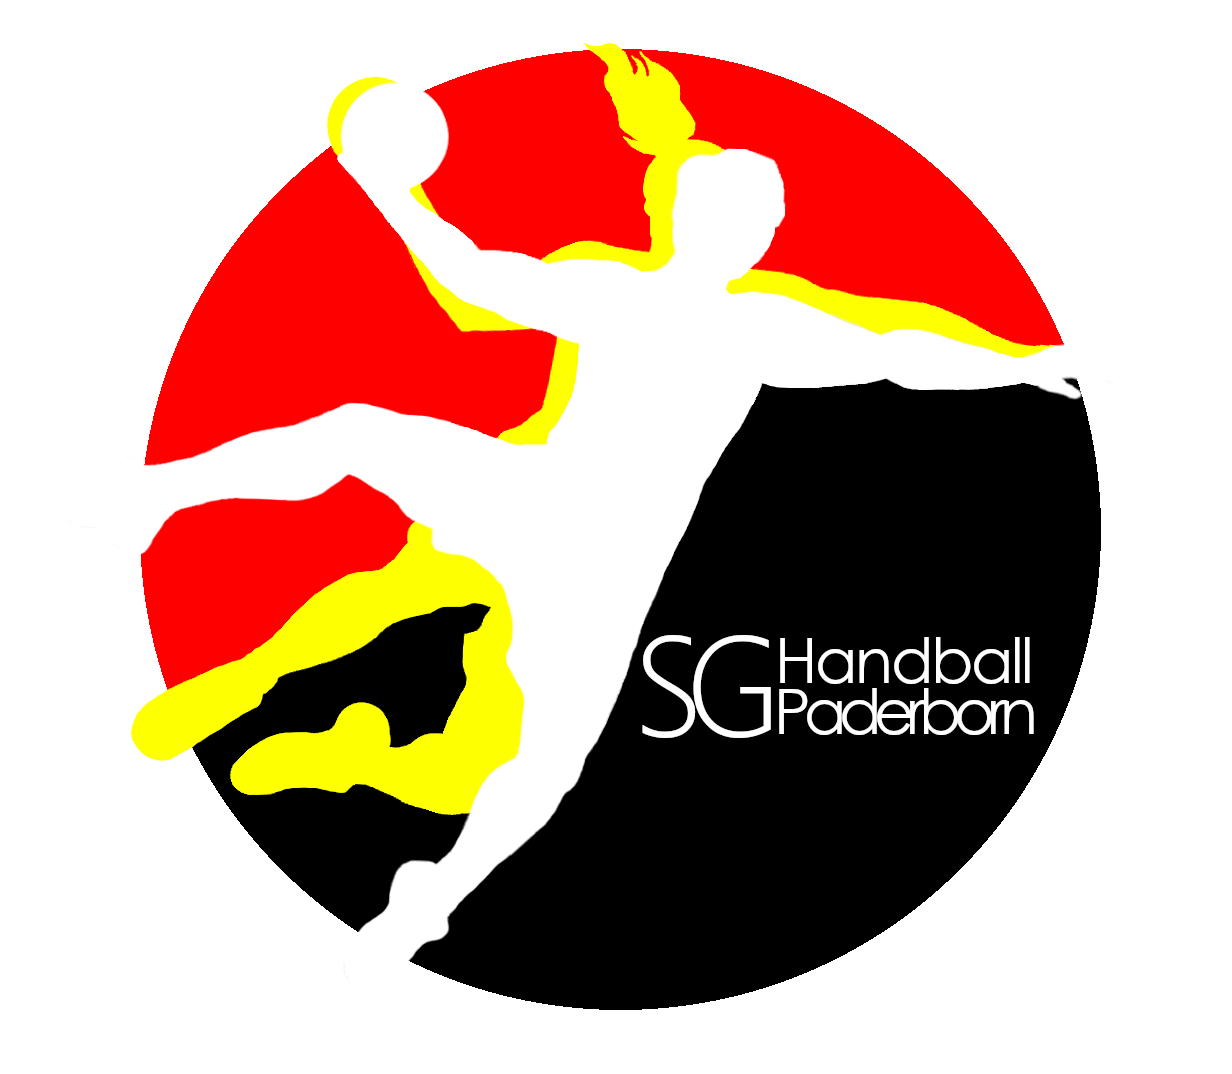 SG Handball Paderborn